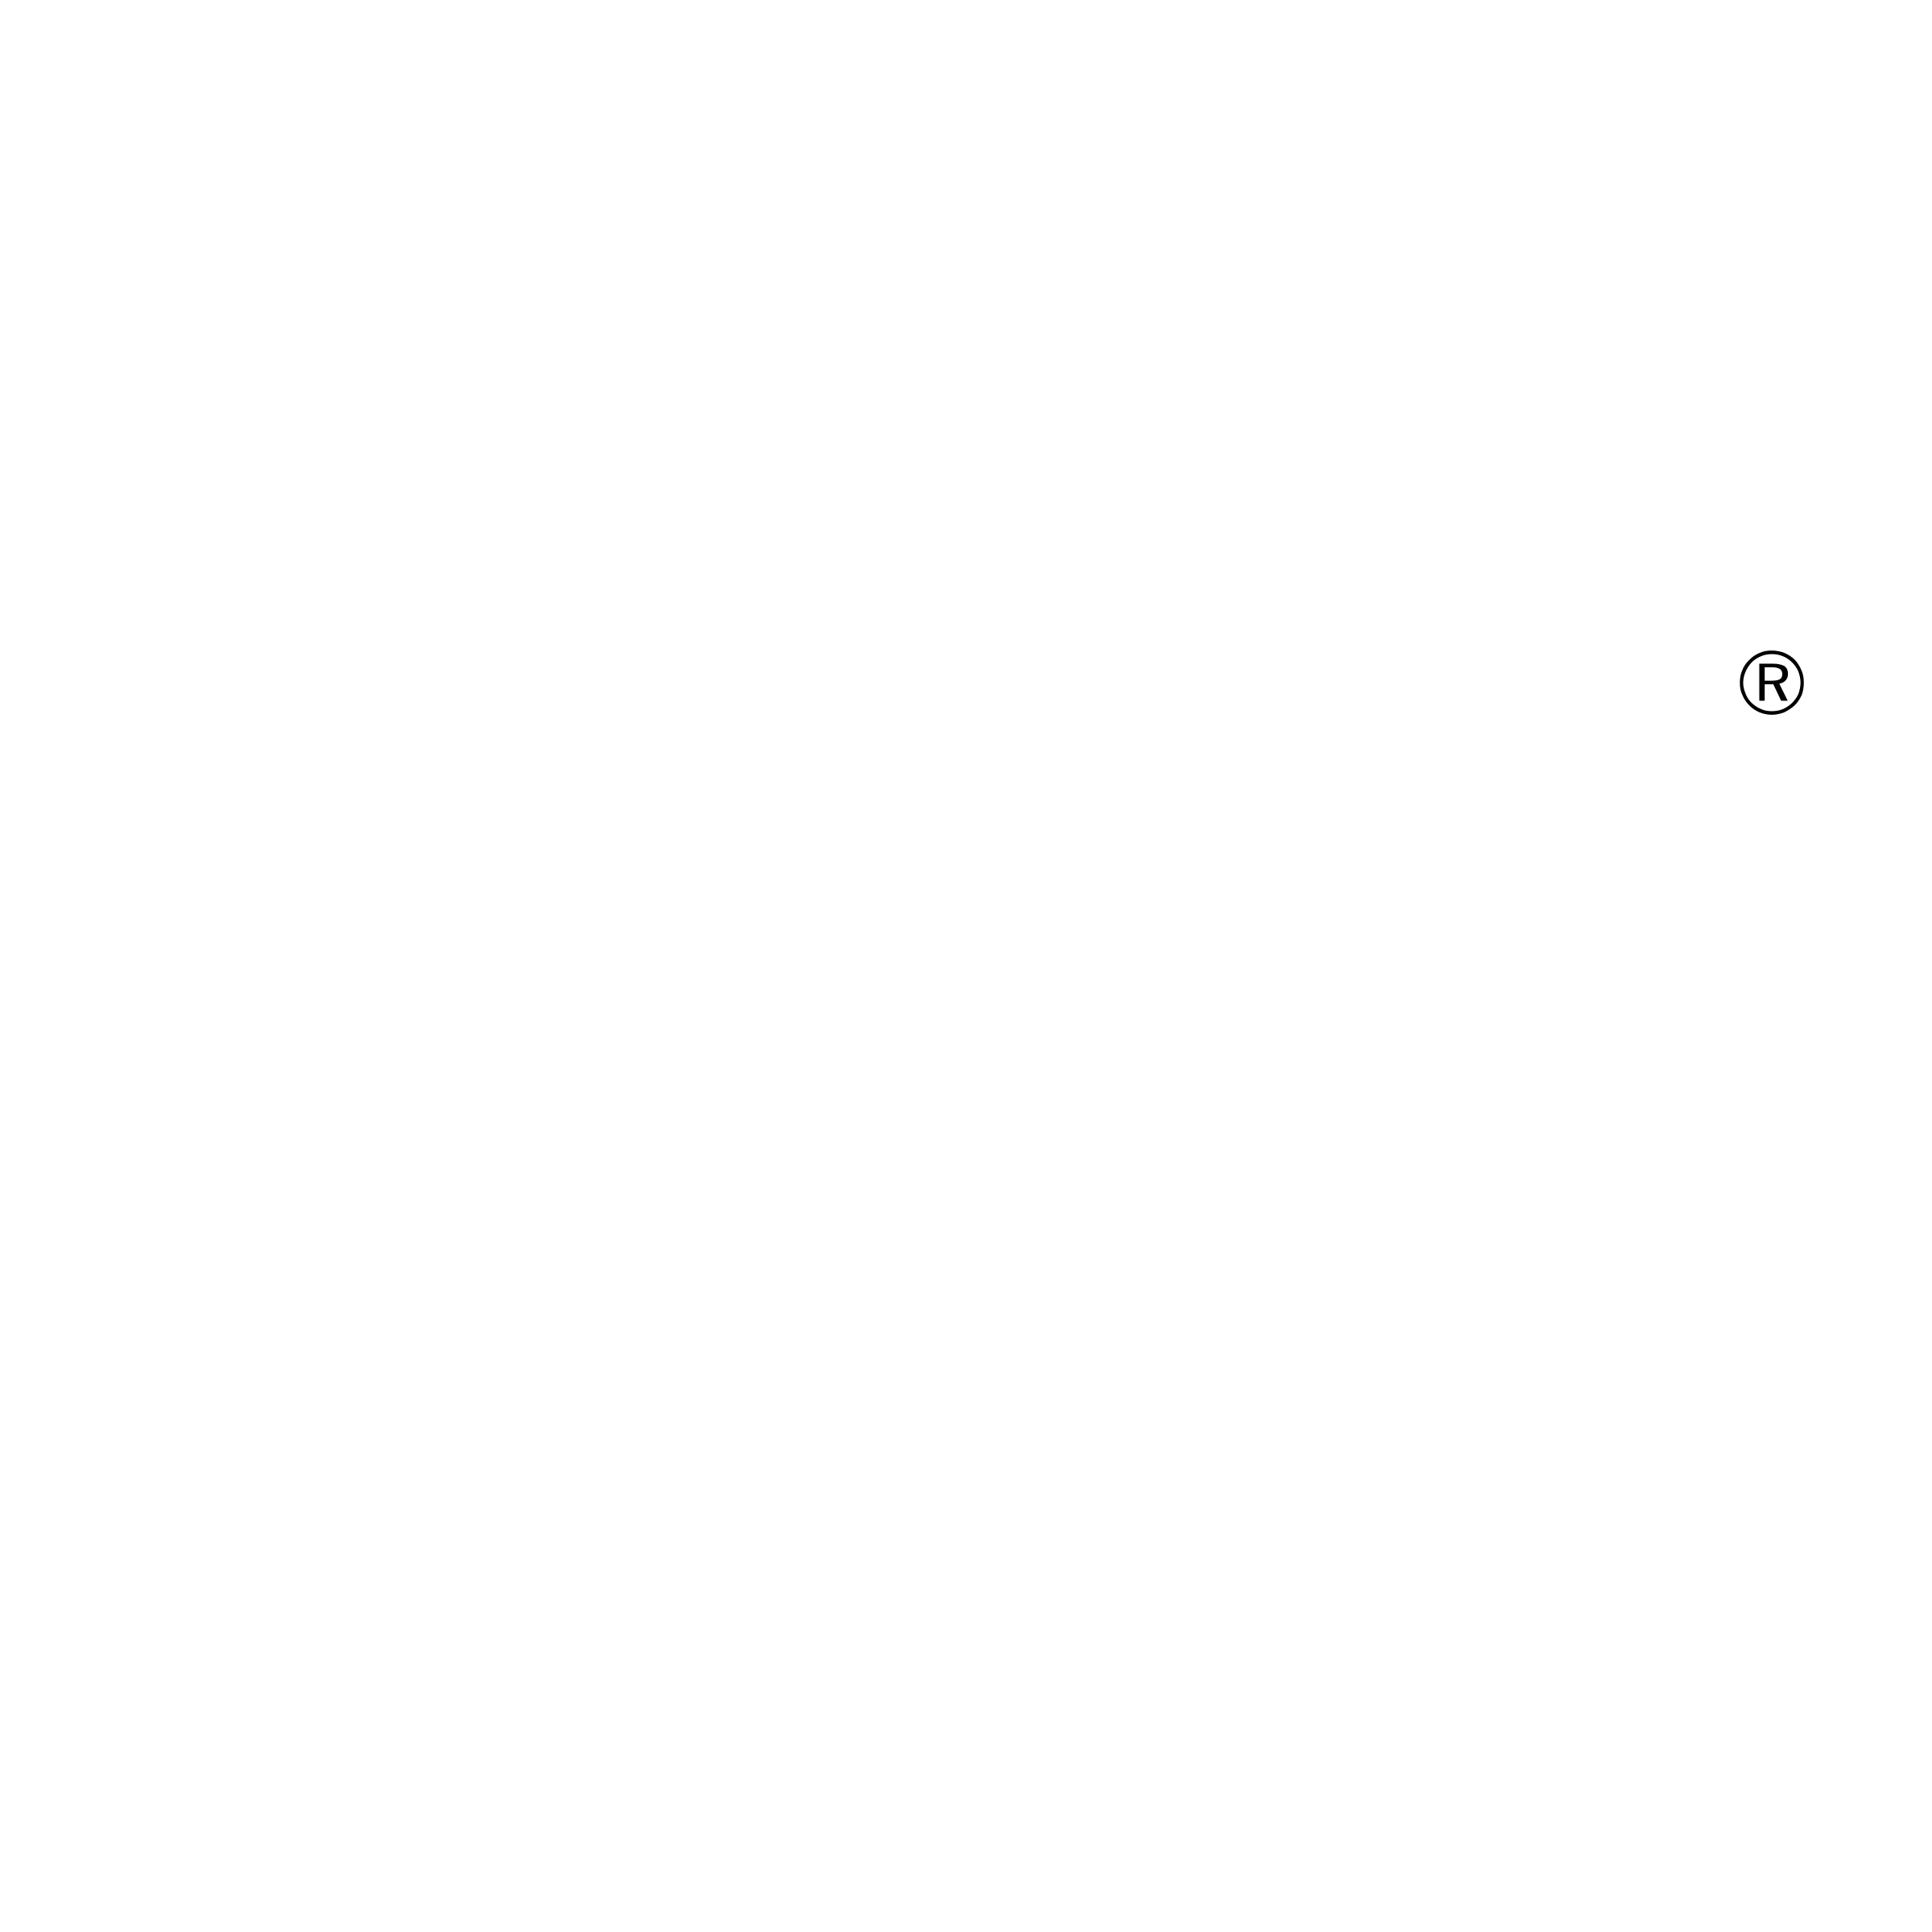 TRENDnet Logo - TRENDnet Logo PNG Transparent & SVG Vector